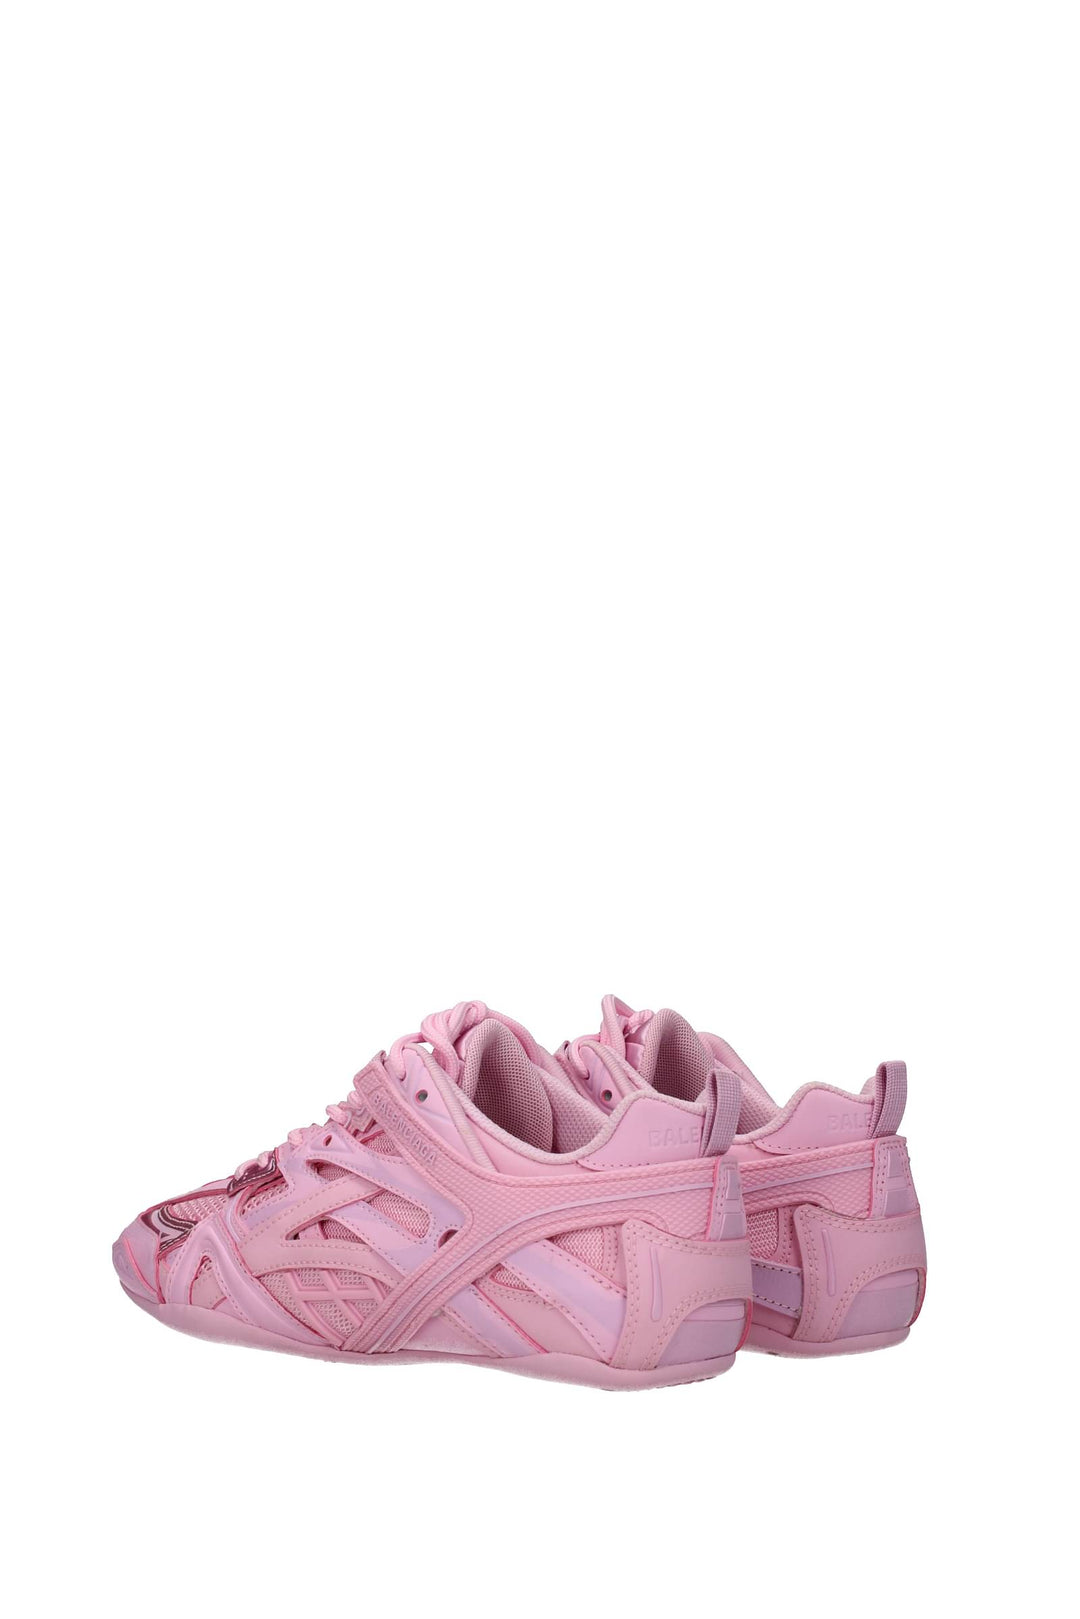 Sneakers Tessuto Rosa - Balenciaga - Donna